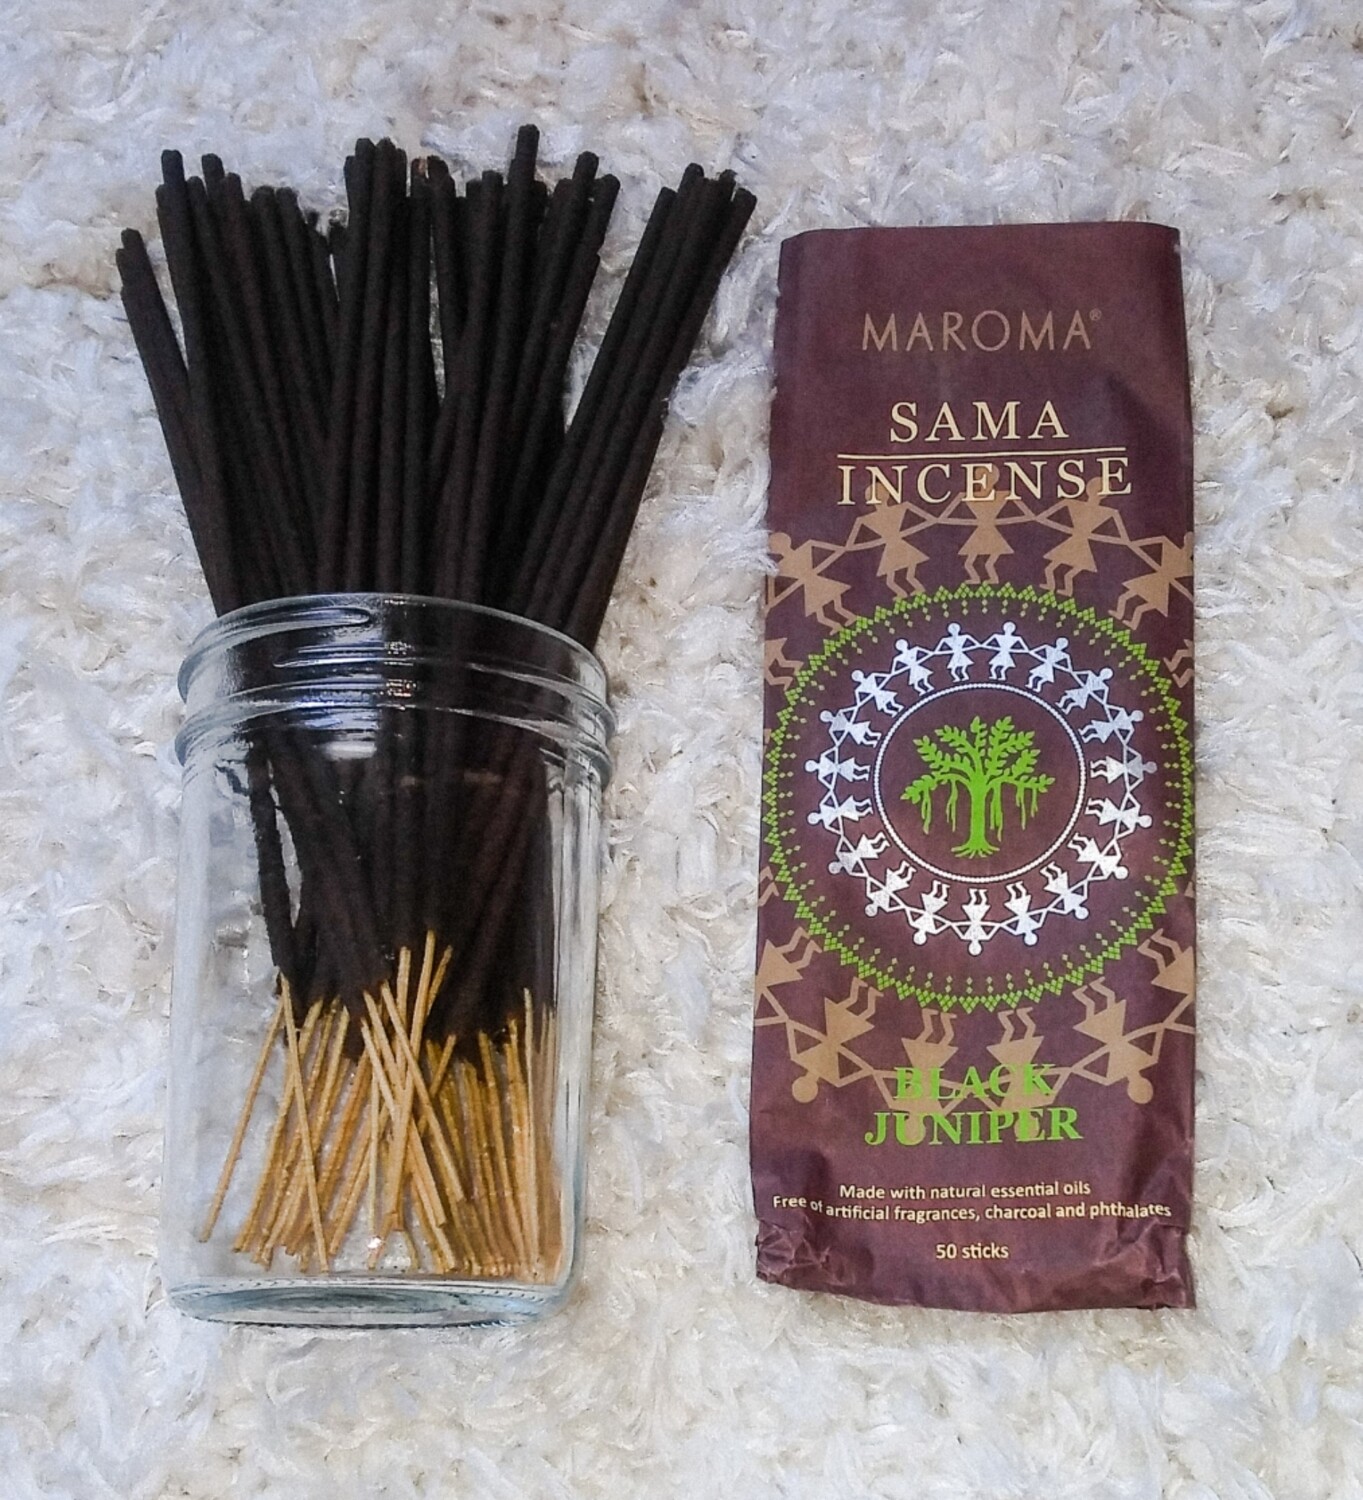 Sama incense sticks